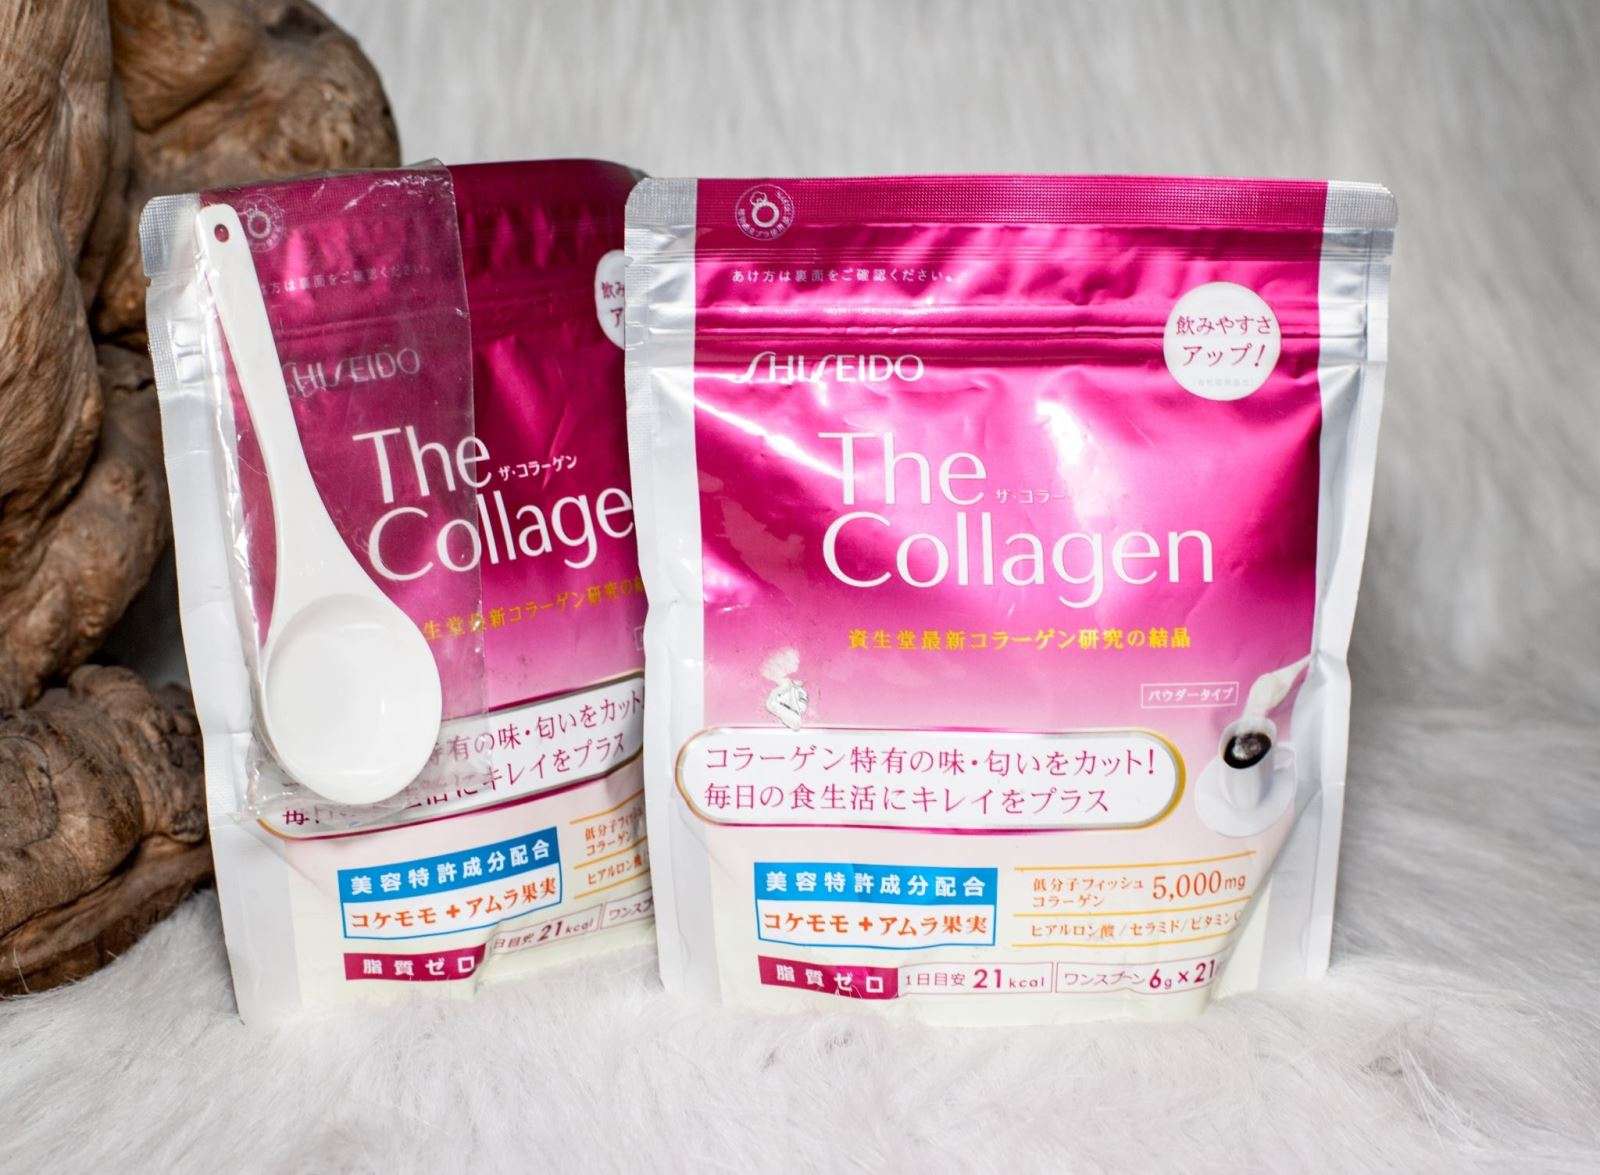 Shiseido The Collagen dạng bột là dòng sản phẩm collagen mới của shiseido tiếp sau dạng nước uống.